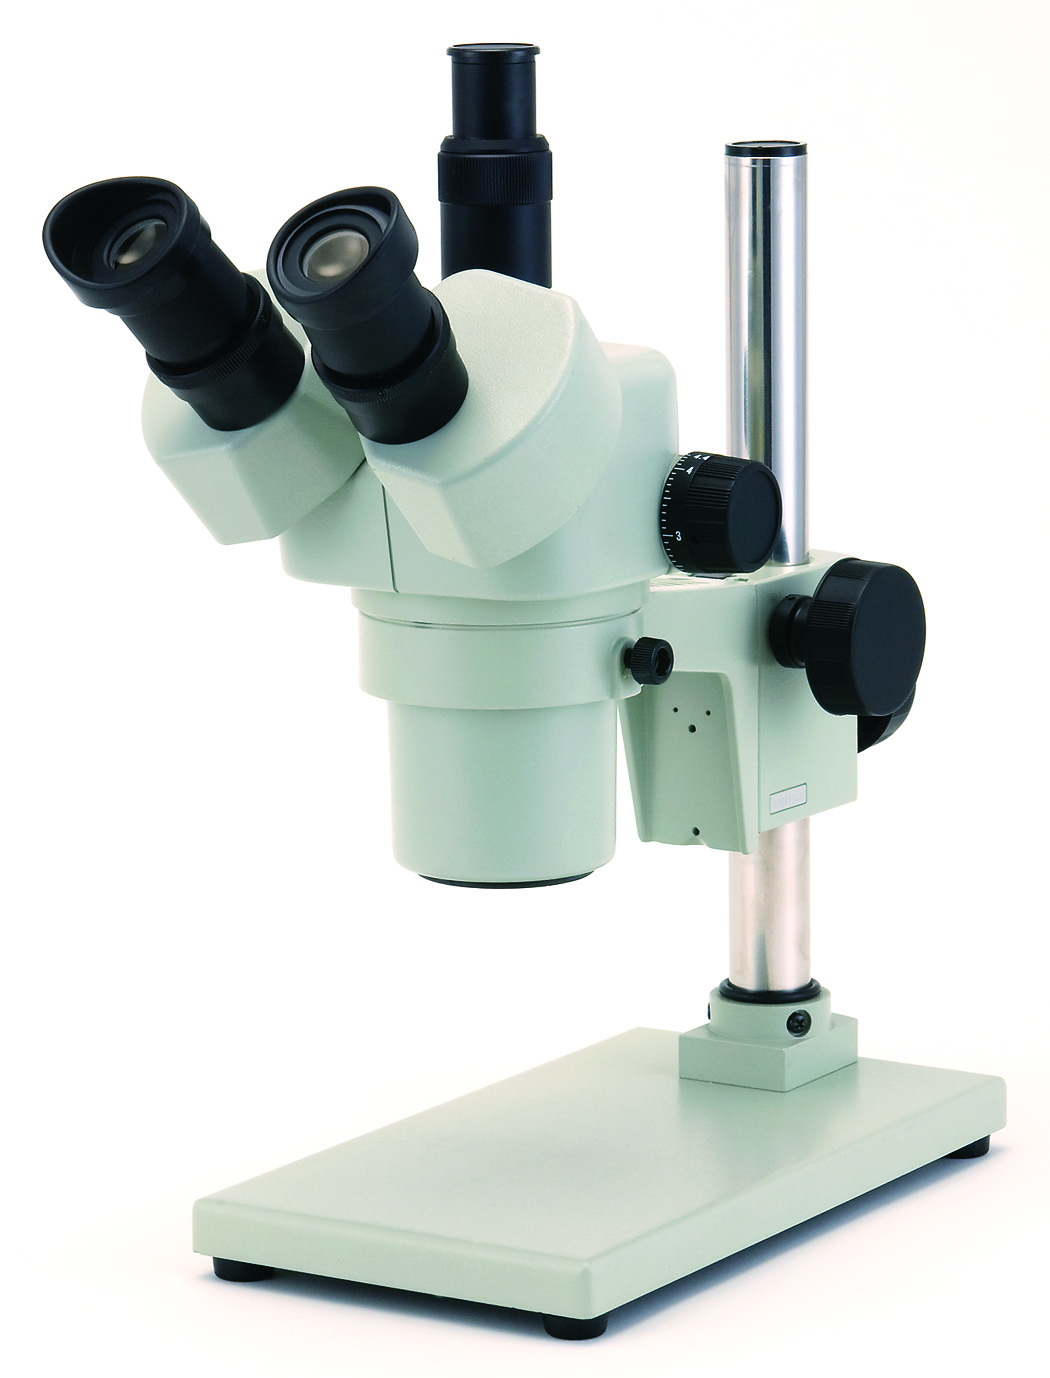 カートン光学 ズームシステム実体顕微鏡<三眼式> LED落射調光照明